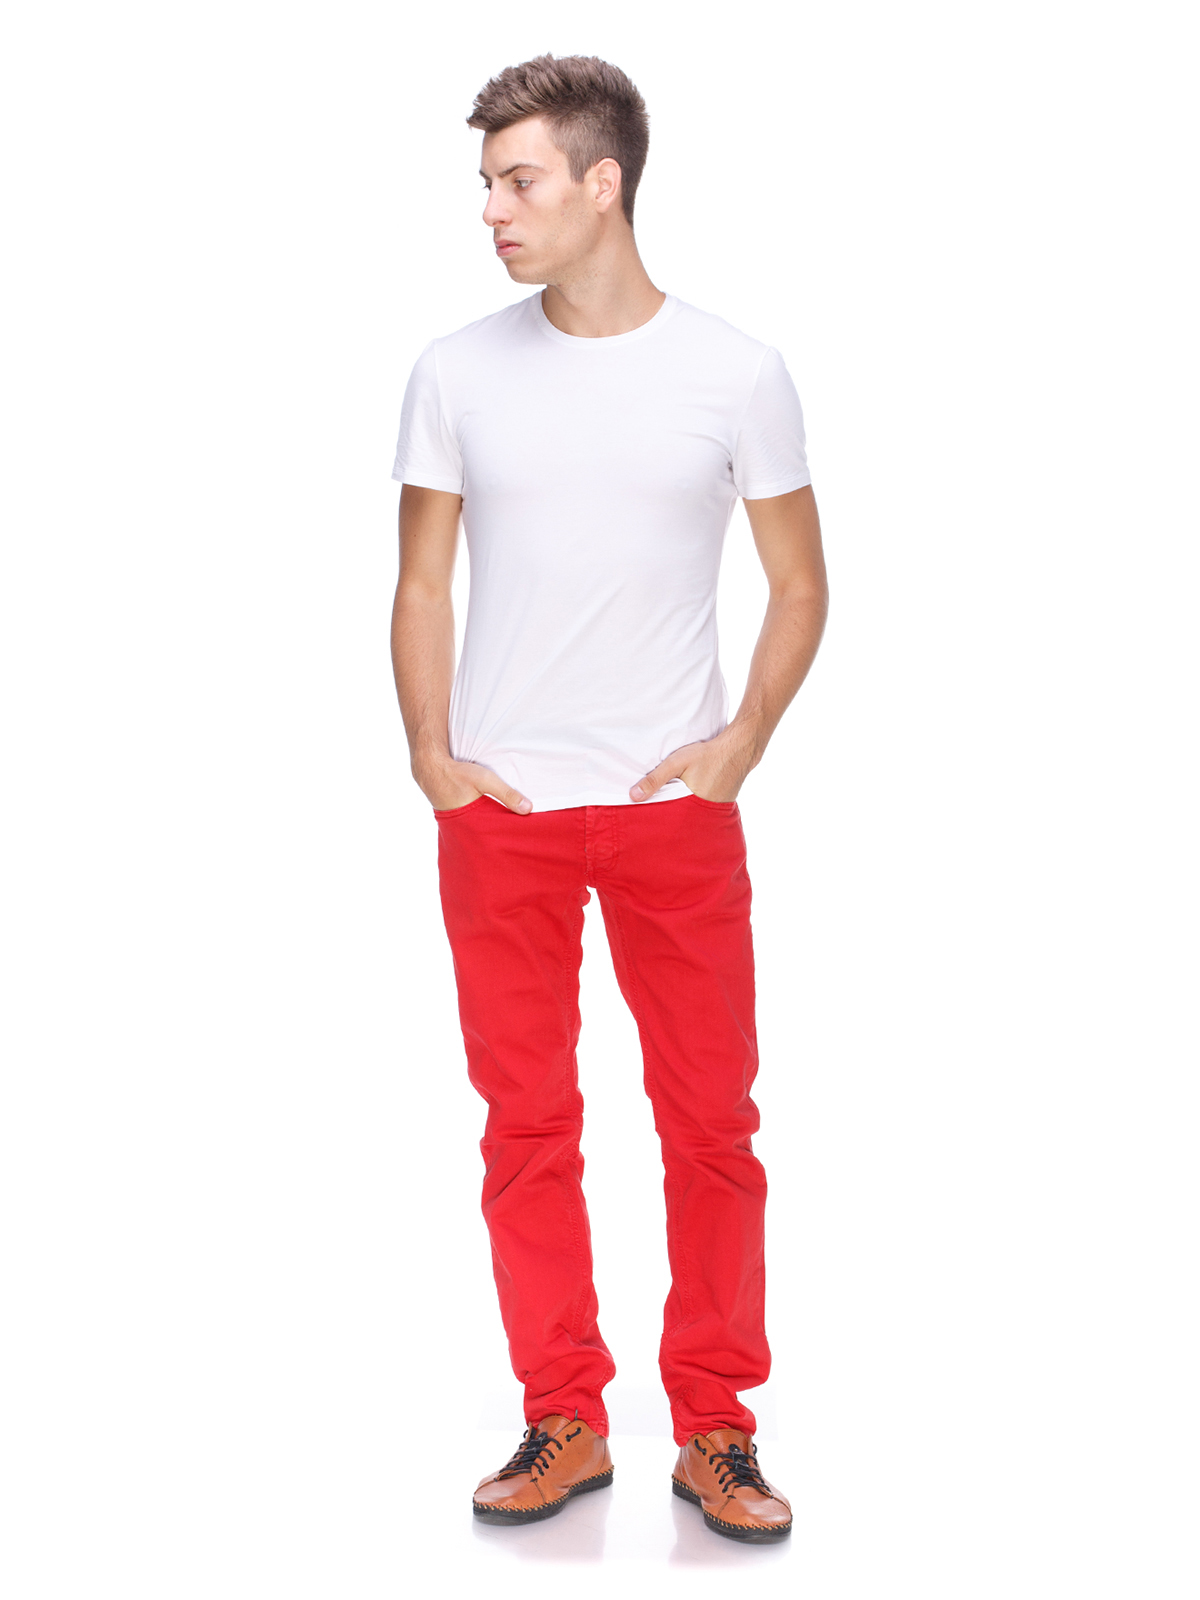 Парень в красных джинсах